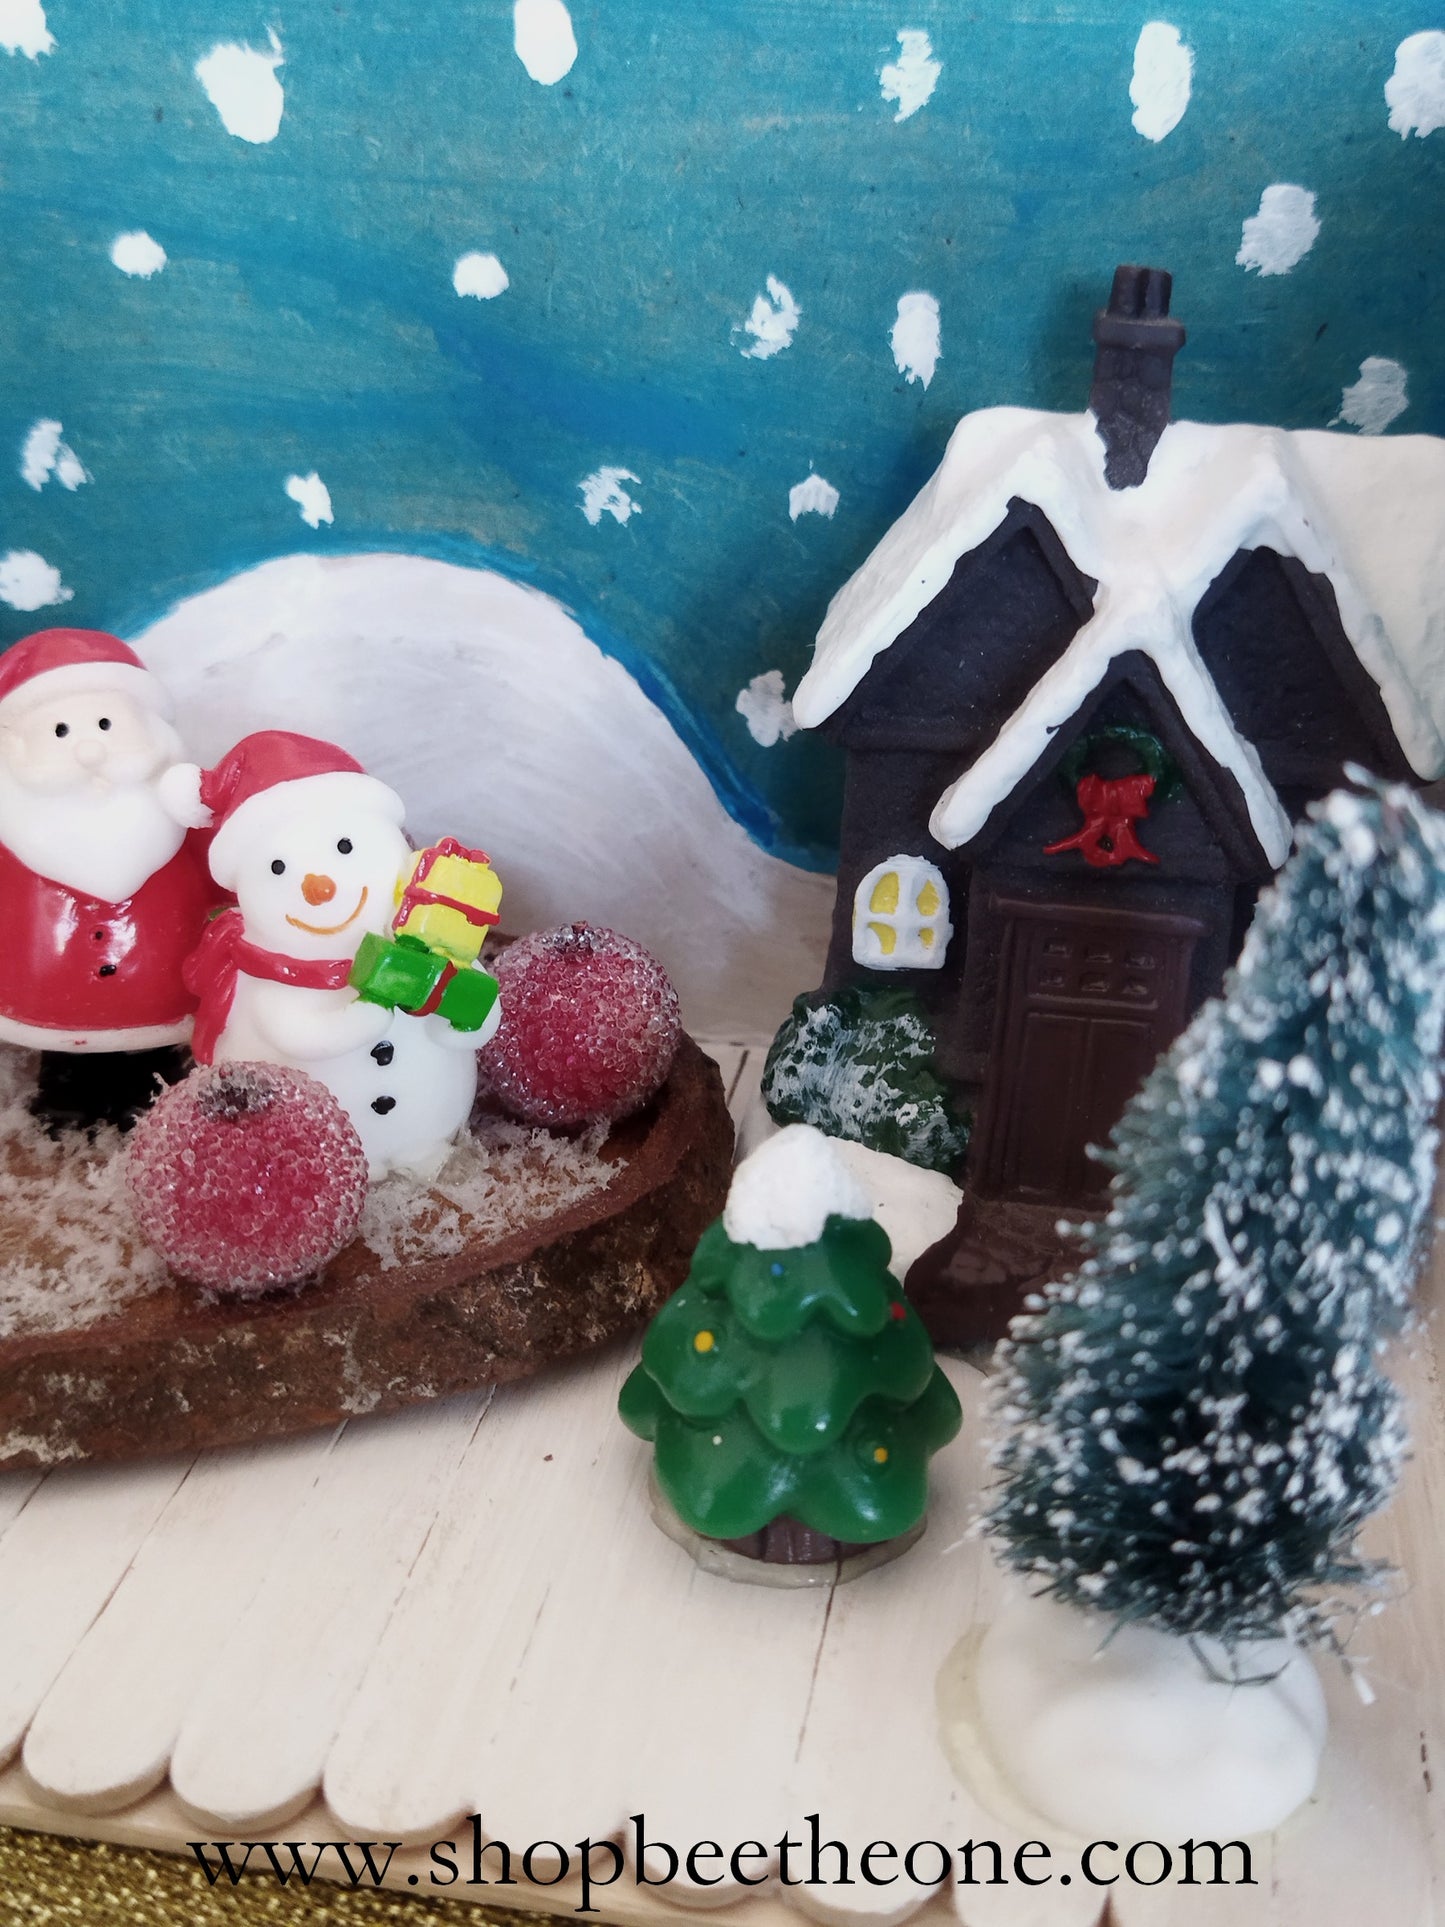 Décoration - Décor présentoir "Village de Noël" avec figurines et rondin en bois